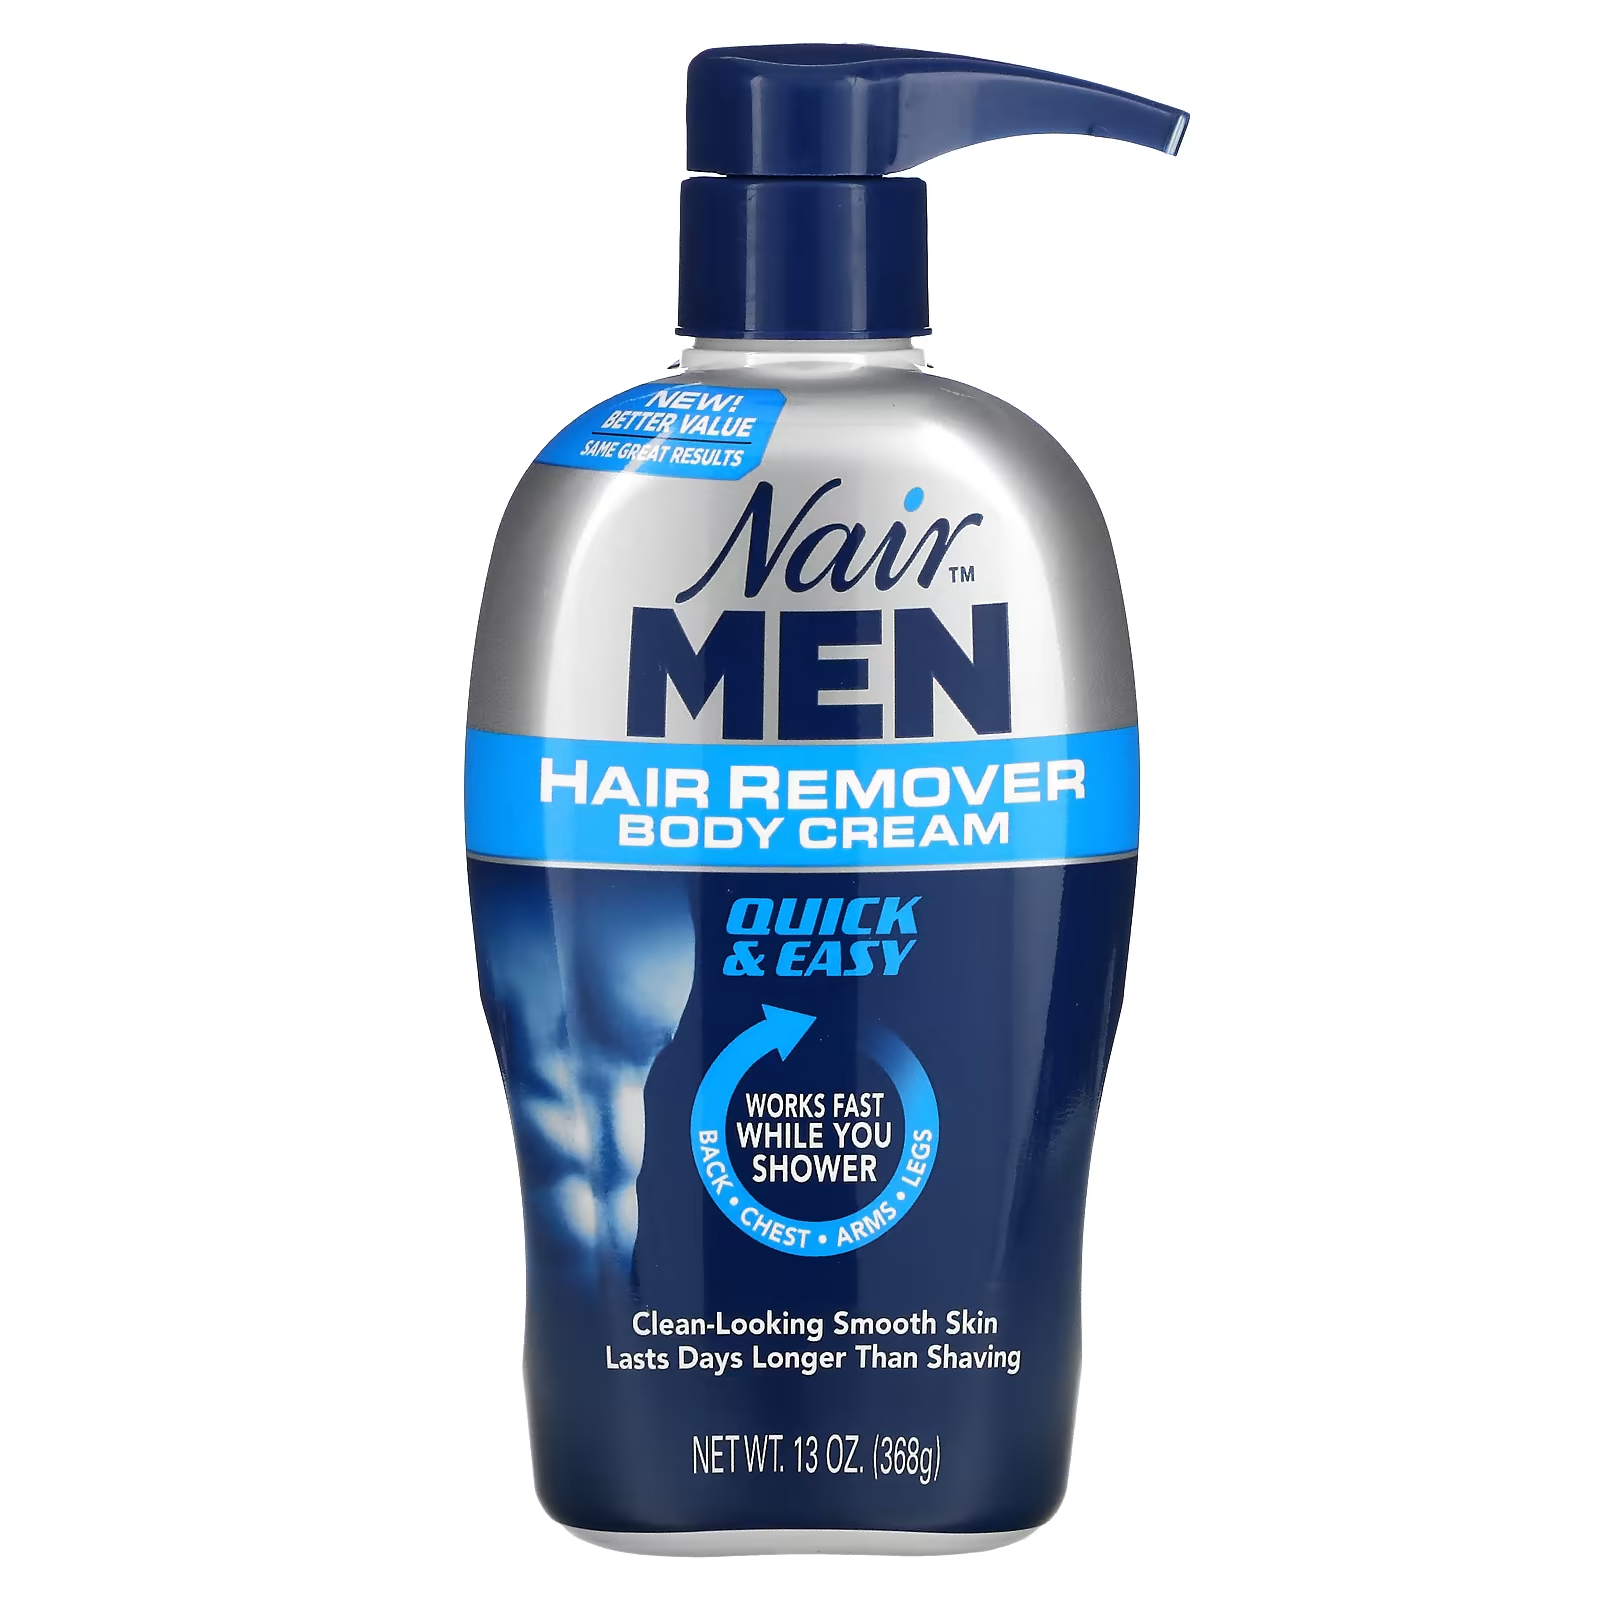 Крем Nair For Men для удаления волос, 368 г средство для удаления волос nair glides on для жестких и густых волос